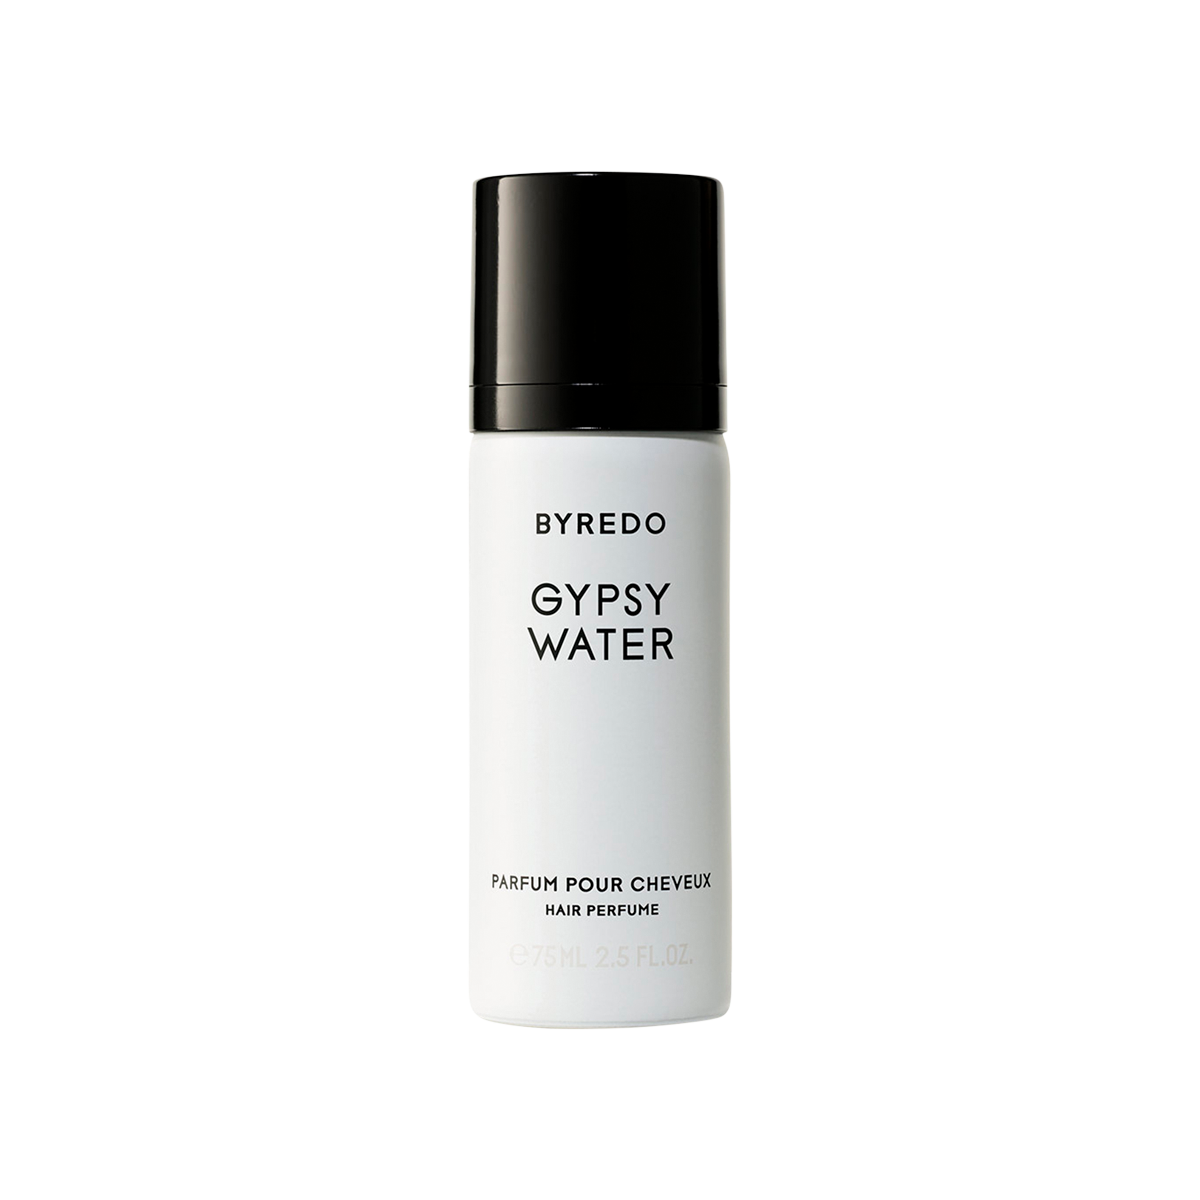 Byredo - Gypsy Water Hair Perfume